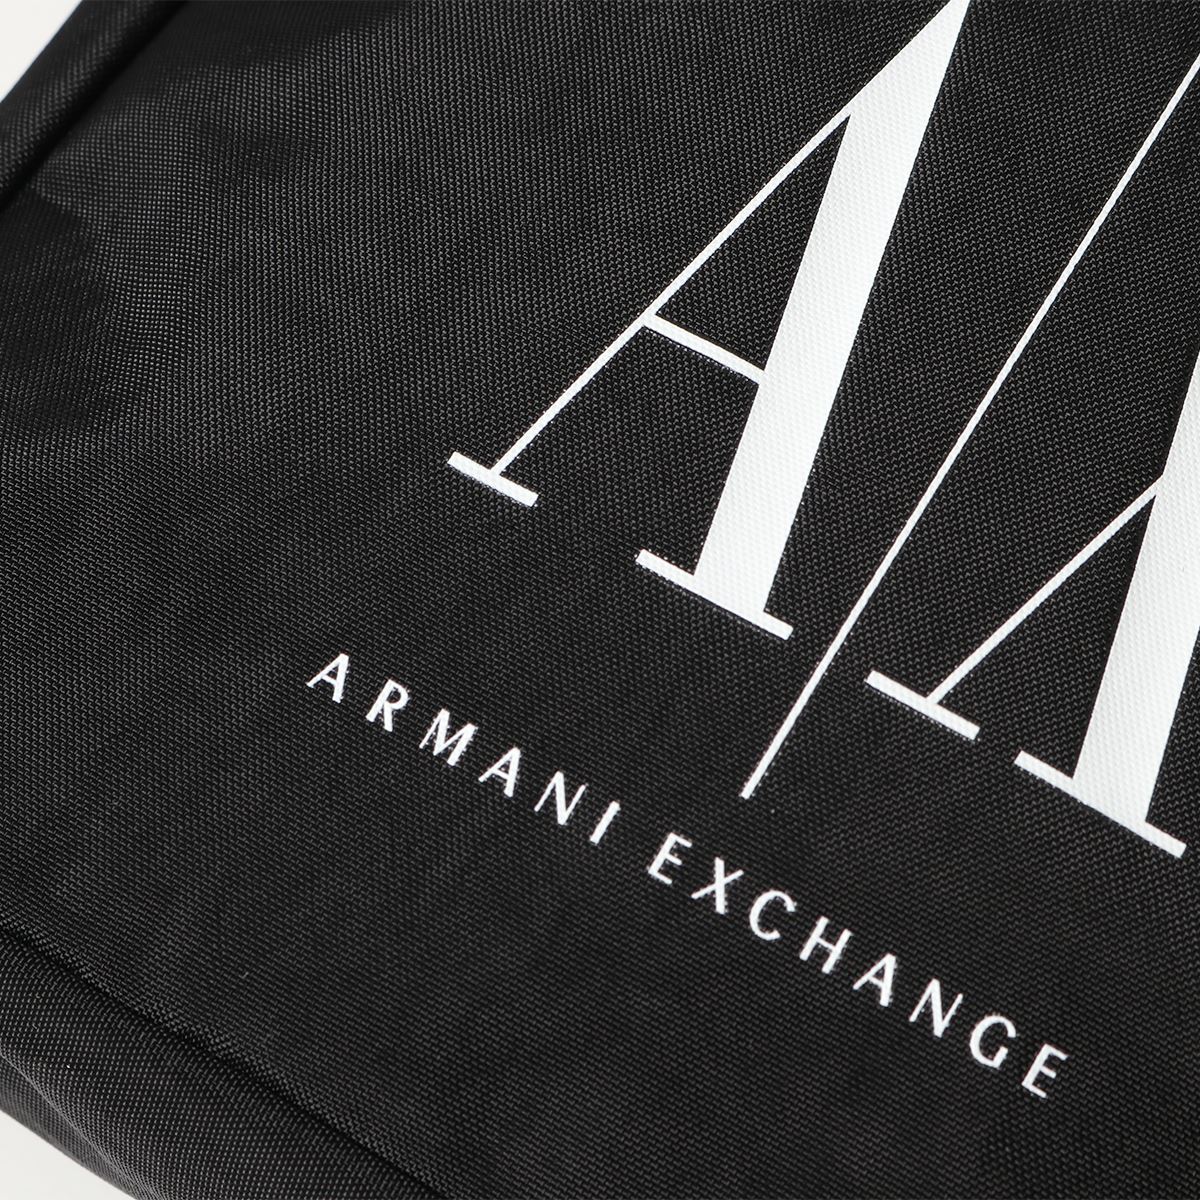 ARMANI EXCHANGE アルマーニ エクスチェンジ 952338 CC350 サコッシュ メッセンジャーバッグ ショルダーバッグ ナイロン  ロゴ 鞄 00020/BLACK メンズ | インポートセレクト musee